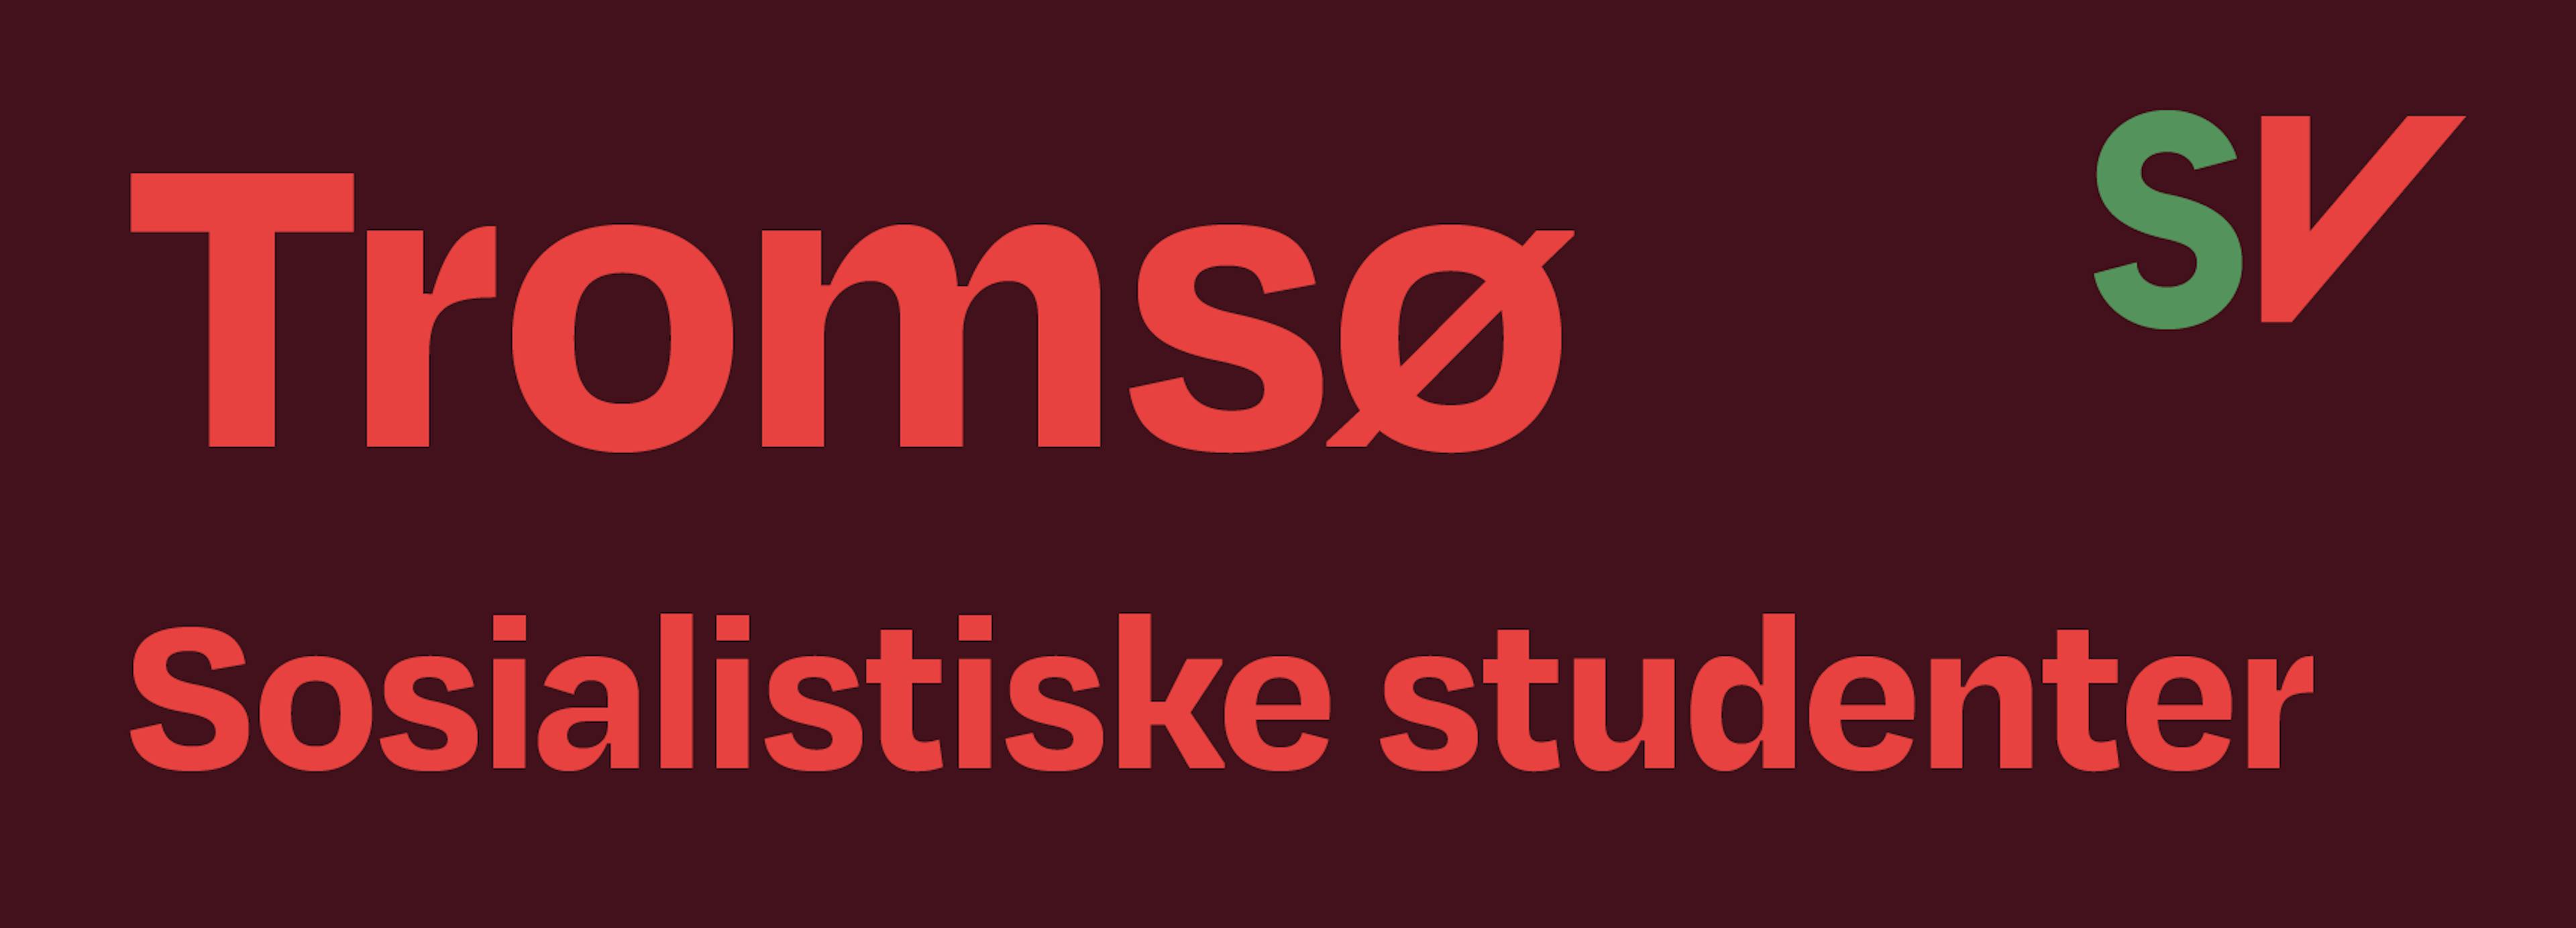 Tromsø Sosialistiske Studenter